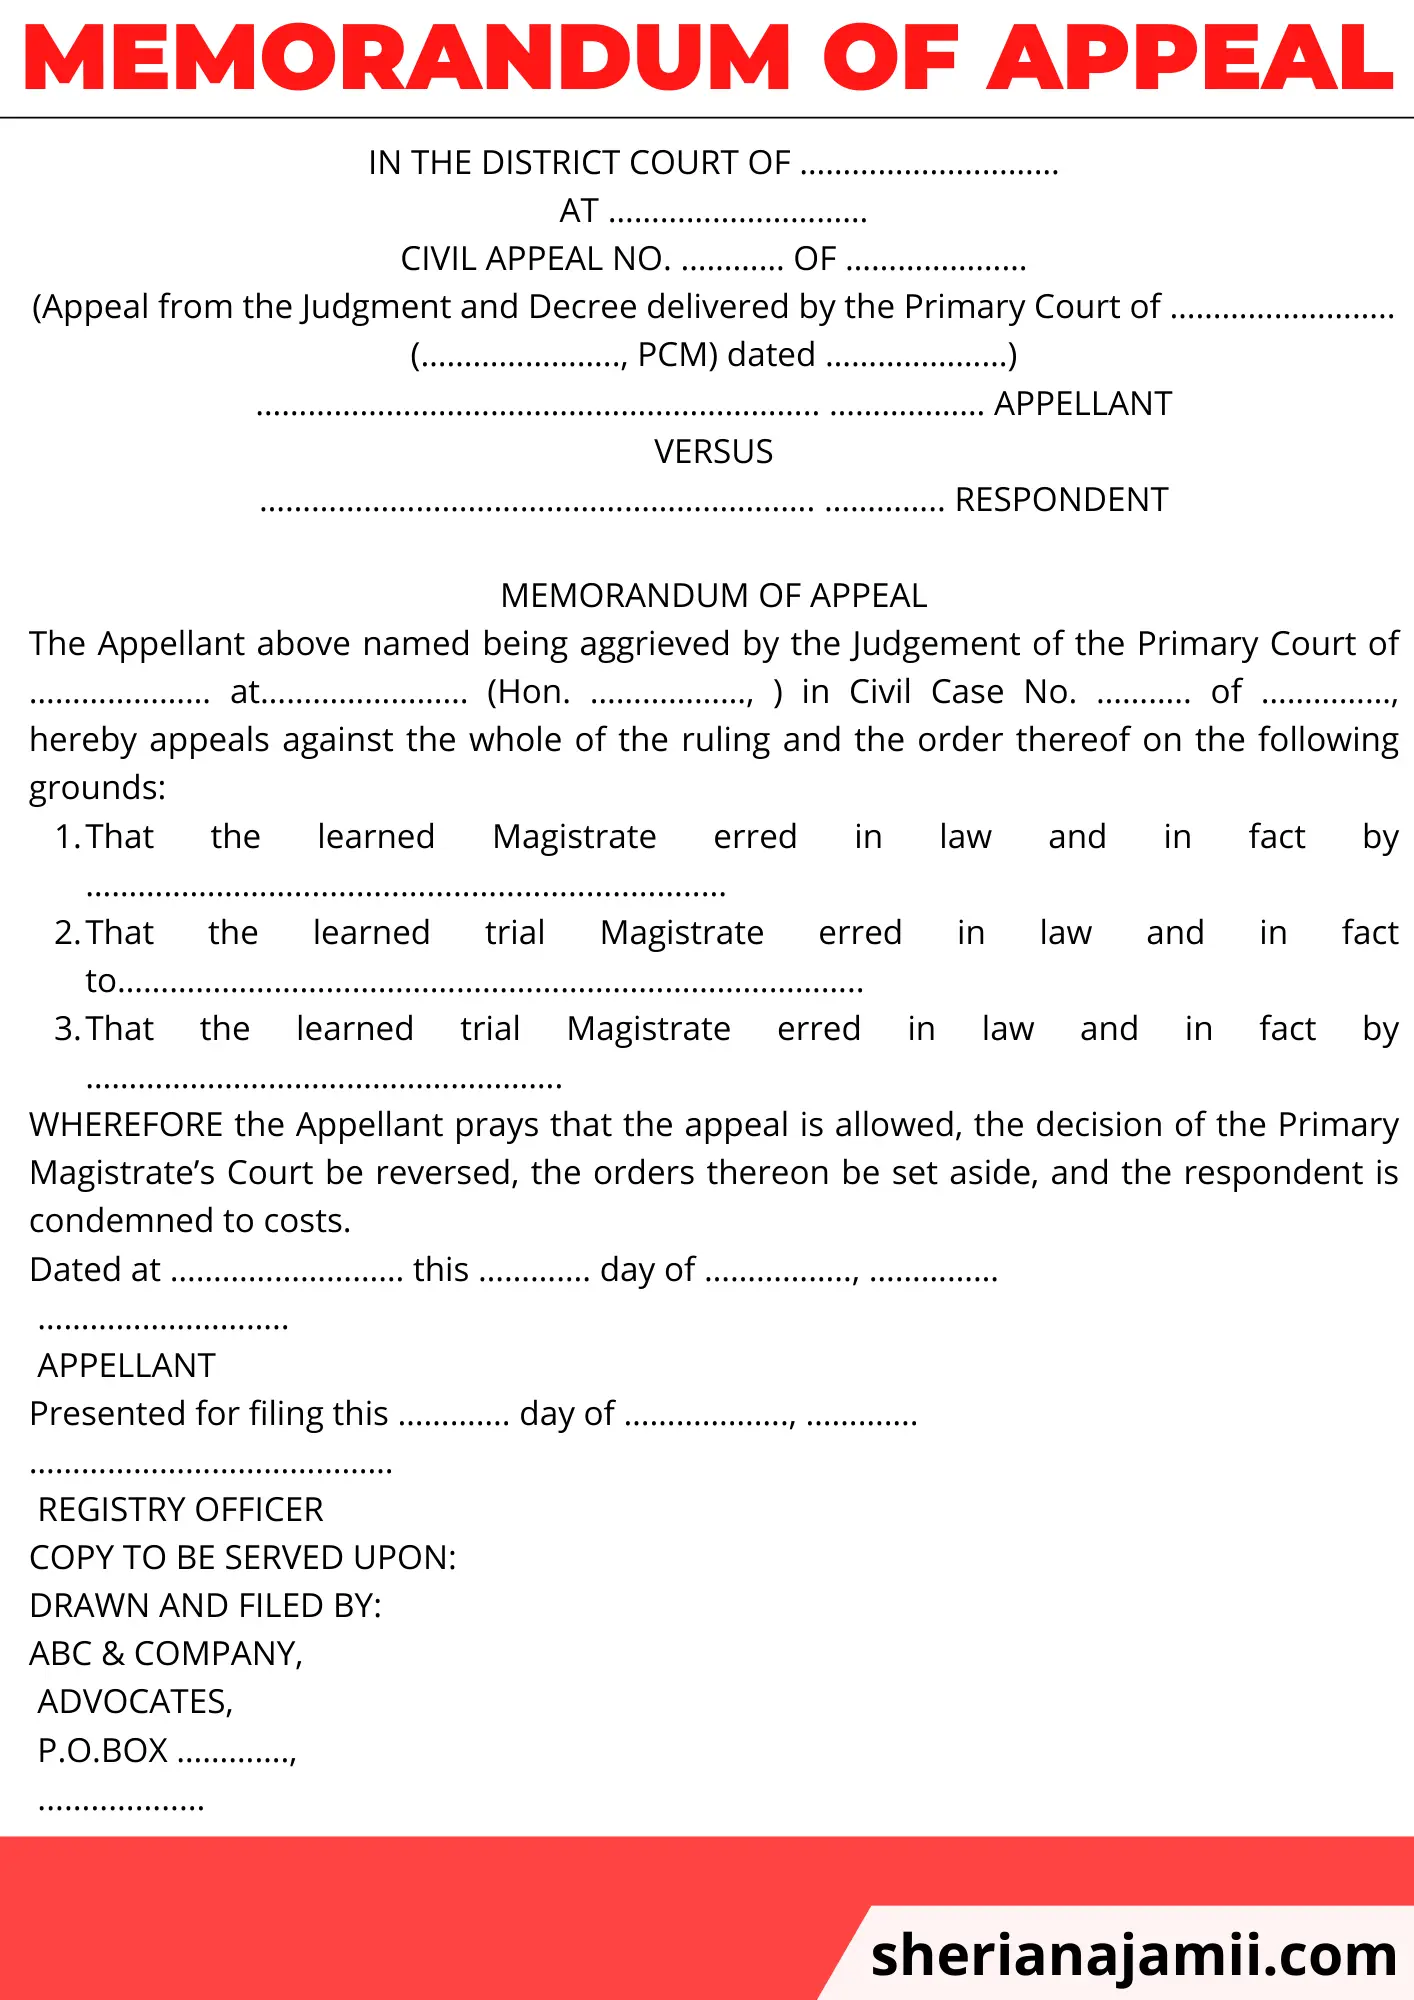 Memorandum of Appeal, Memorandum of Appeal sample, appeal memorandum sample